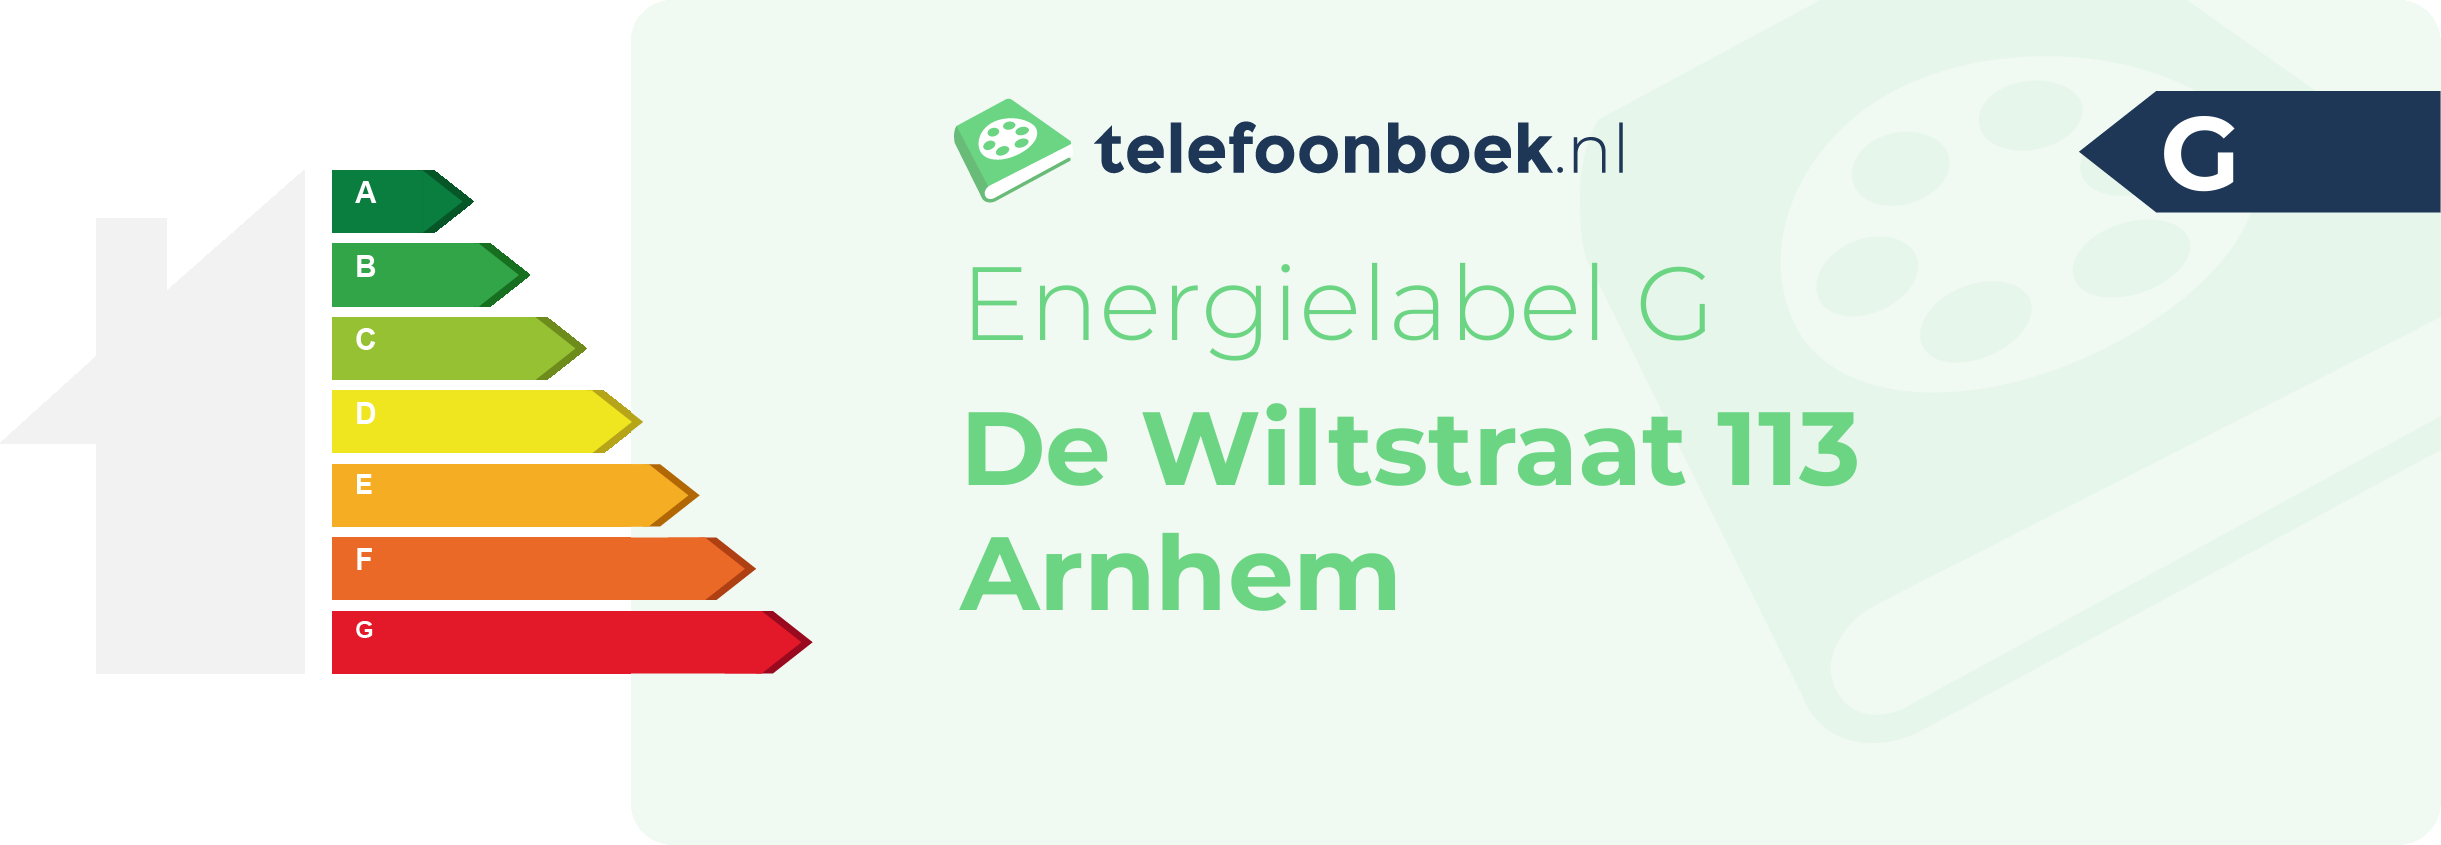 Energielabel De Wiltstraat 113 Arnhem